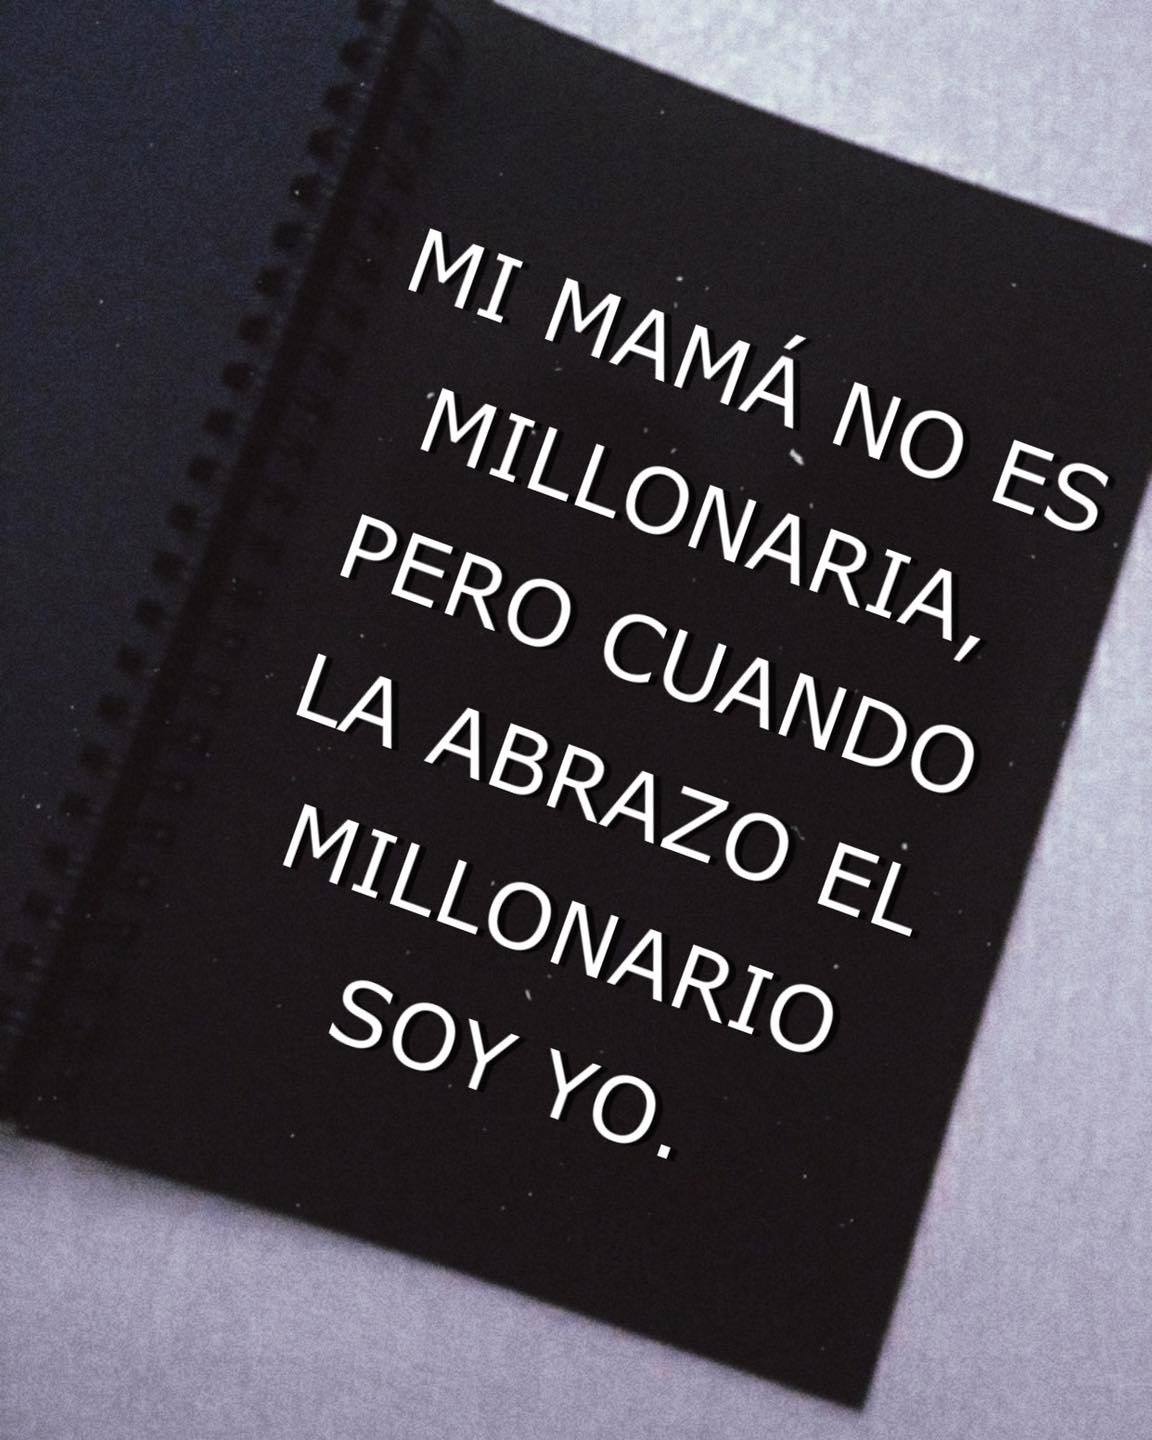 Mi mamá no es millonaria, pero cuando la abrazo el millonario soy yo